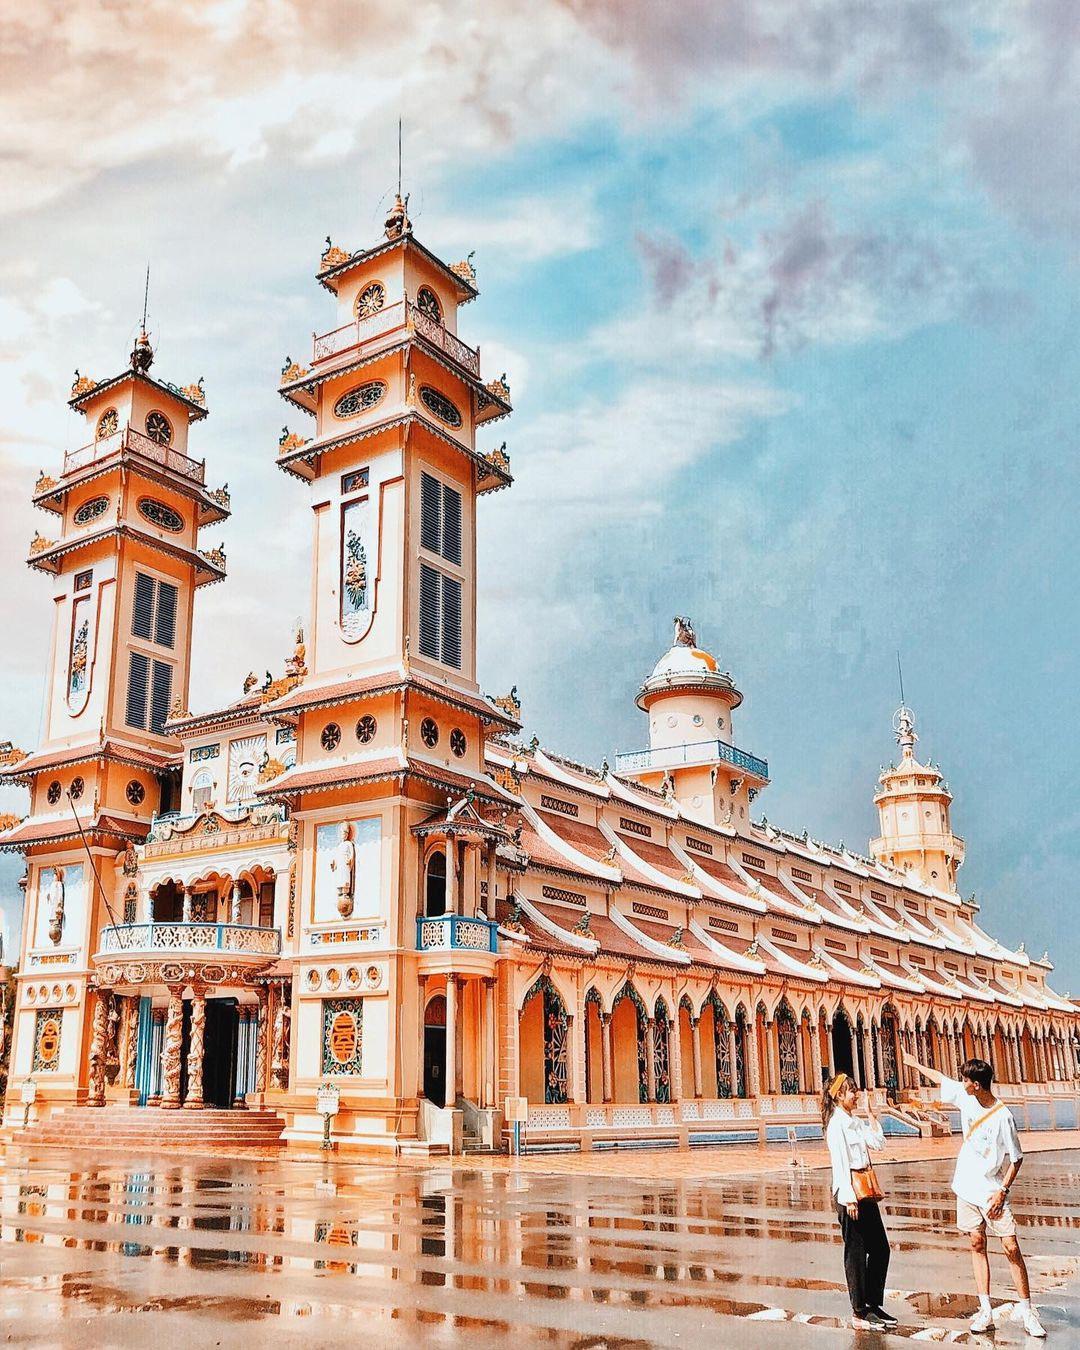 Tòa Thánh Tây Ninh - Điểm tham quan tâm linh nổi tiếng tại Tây Ninh